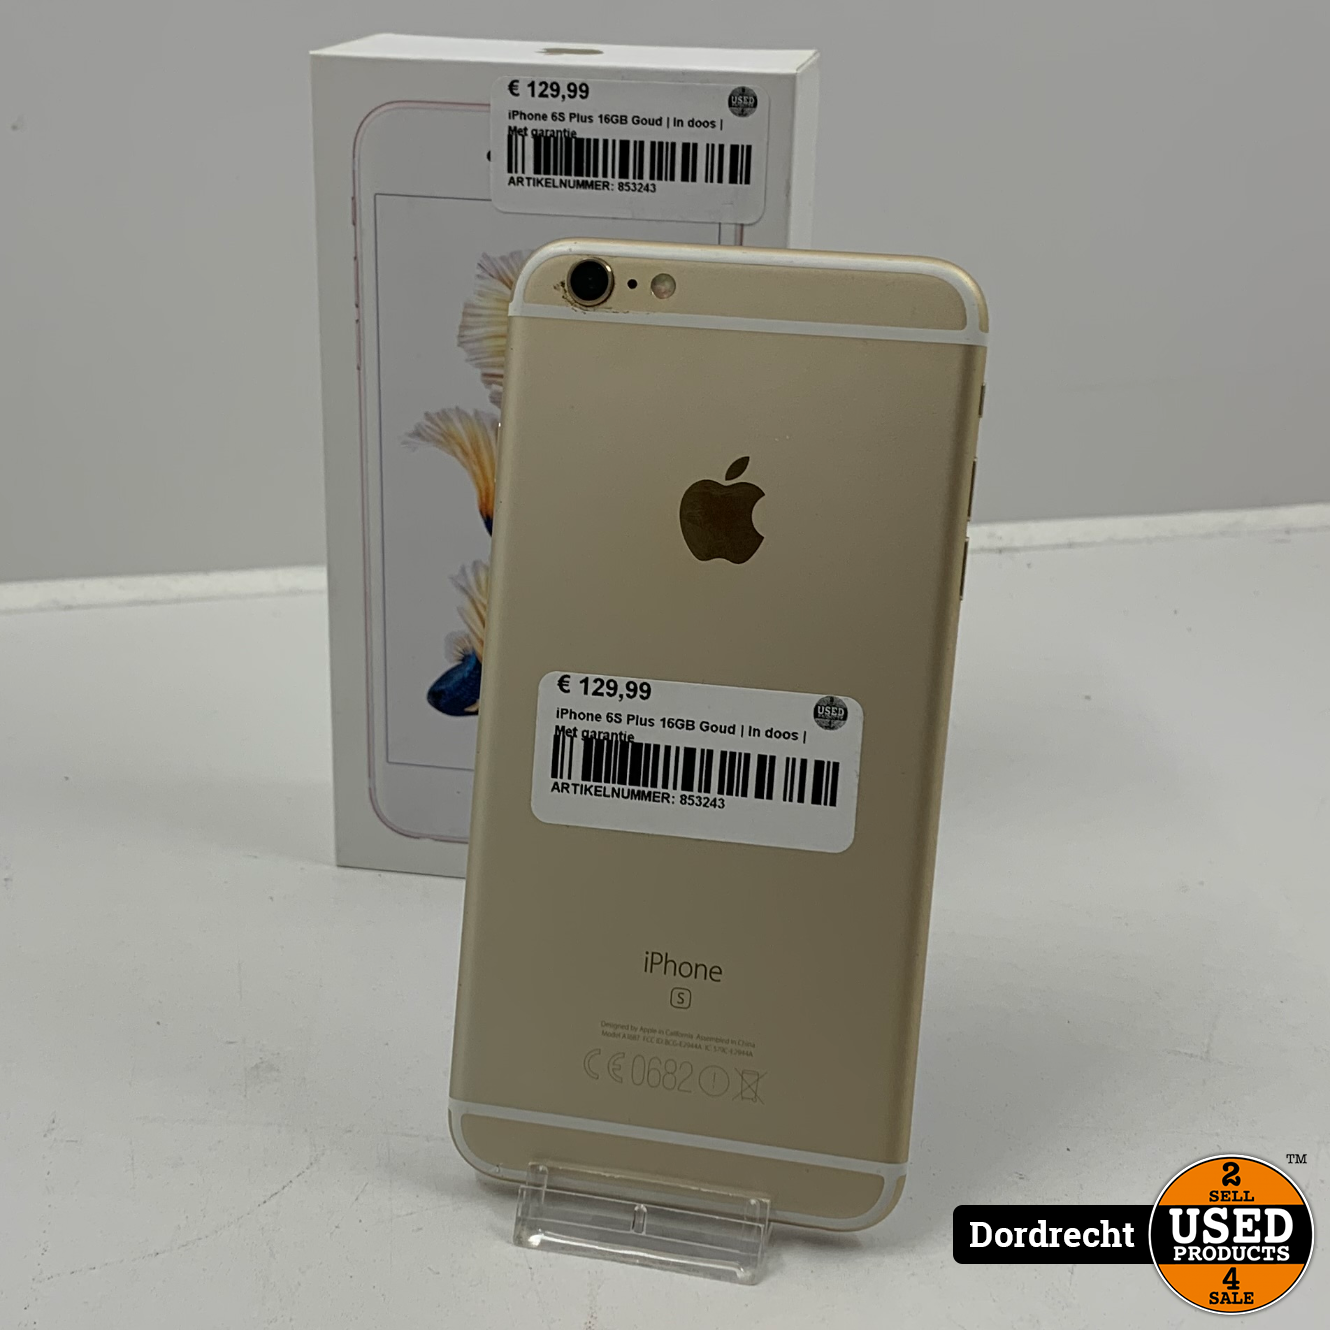 Boren Burgerschap Scherm iPhone 6S Plus 16GB Goud | Accu 100% | In doos | Met garantie - Used  Products Dordrecht